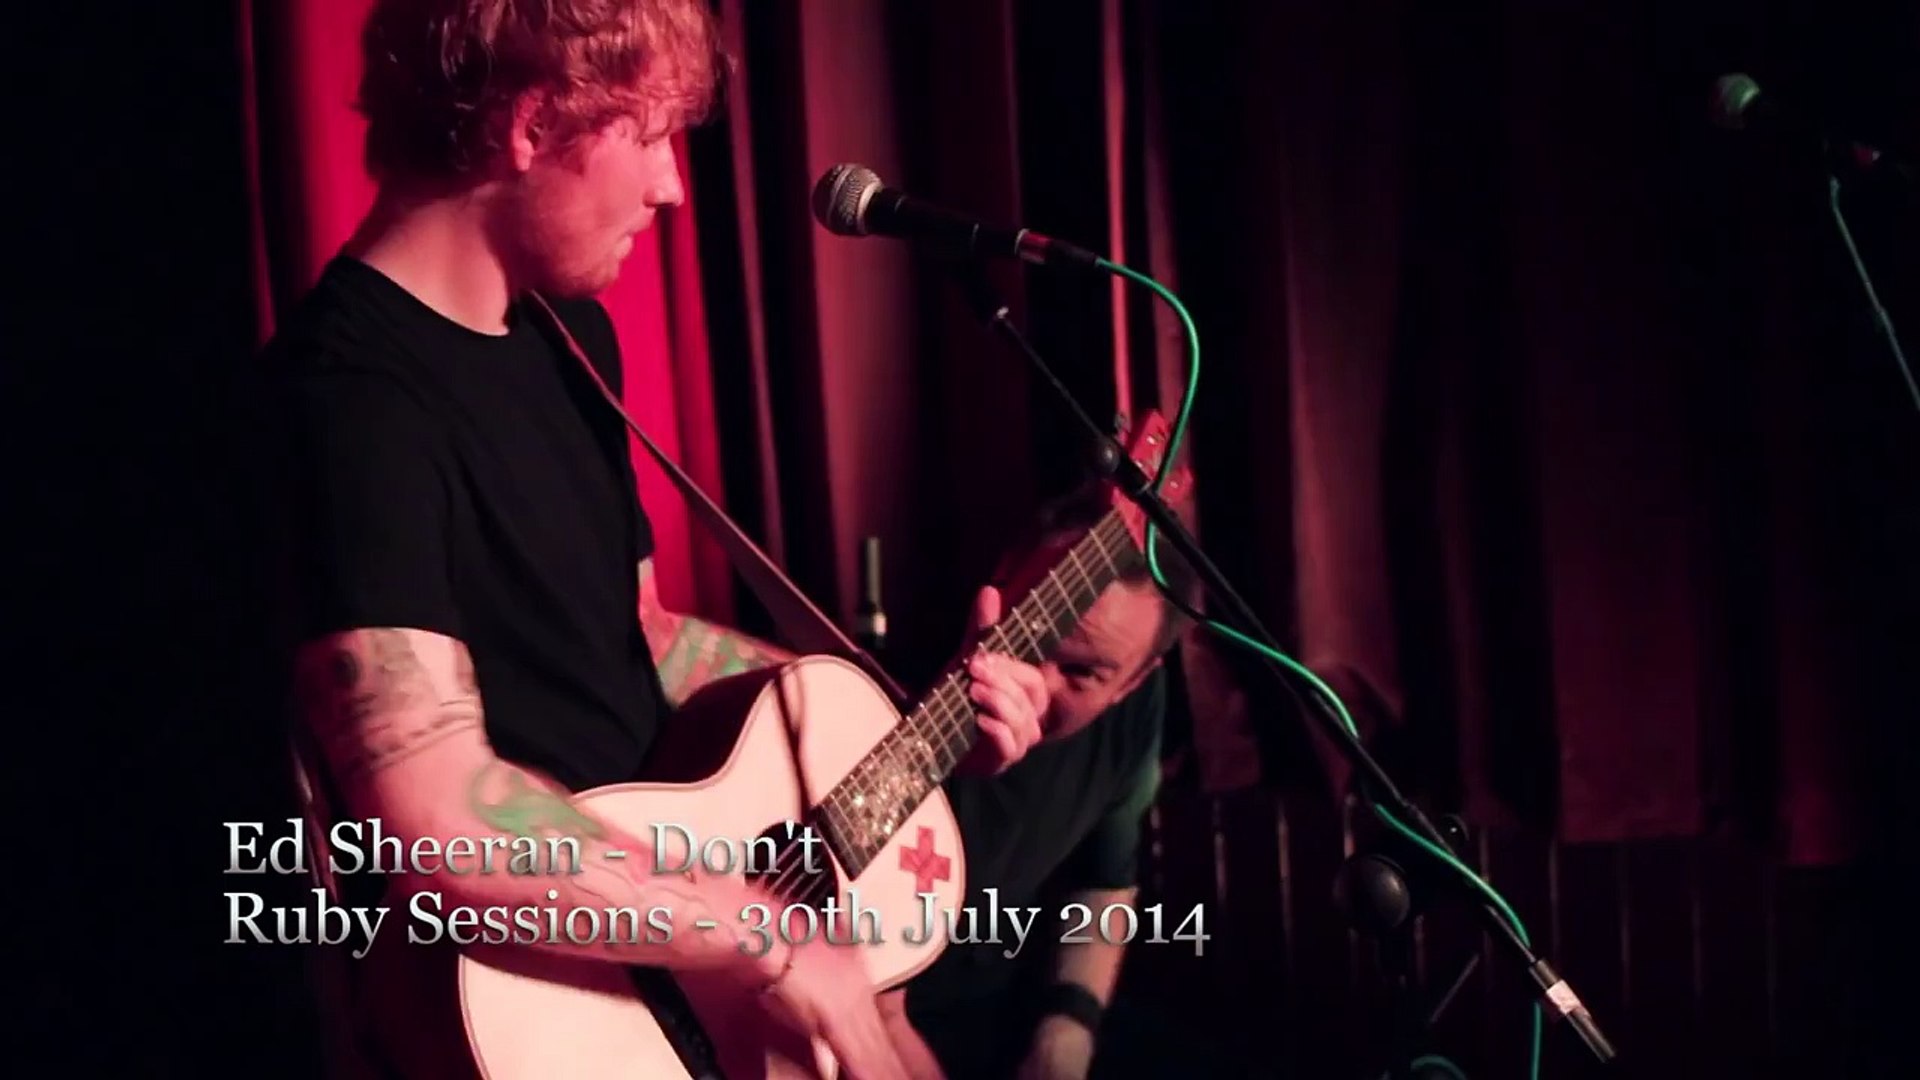 Ed Sheeran - Dont/Loyal/No Diggity/The Next Episode/Nina (Live at the Ruby Sessions)